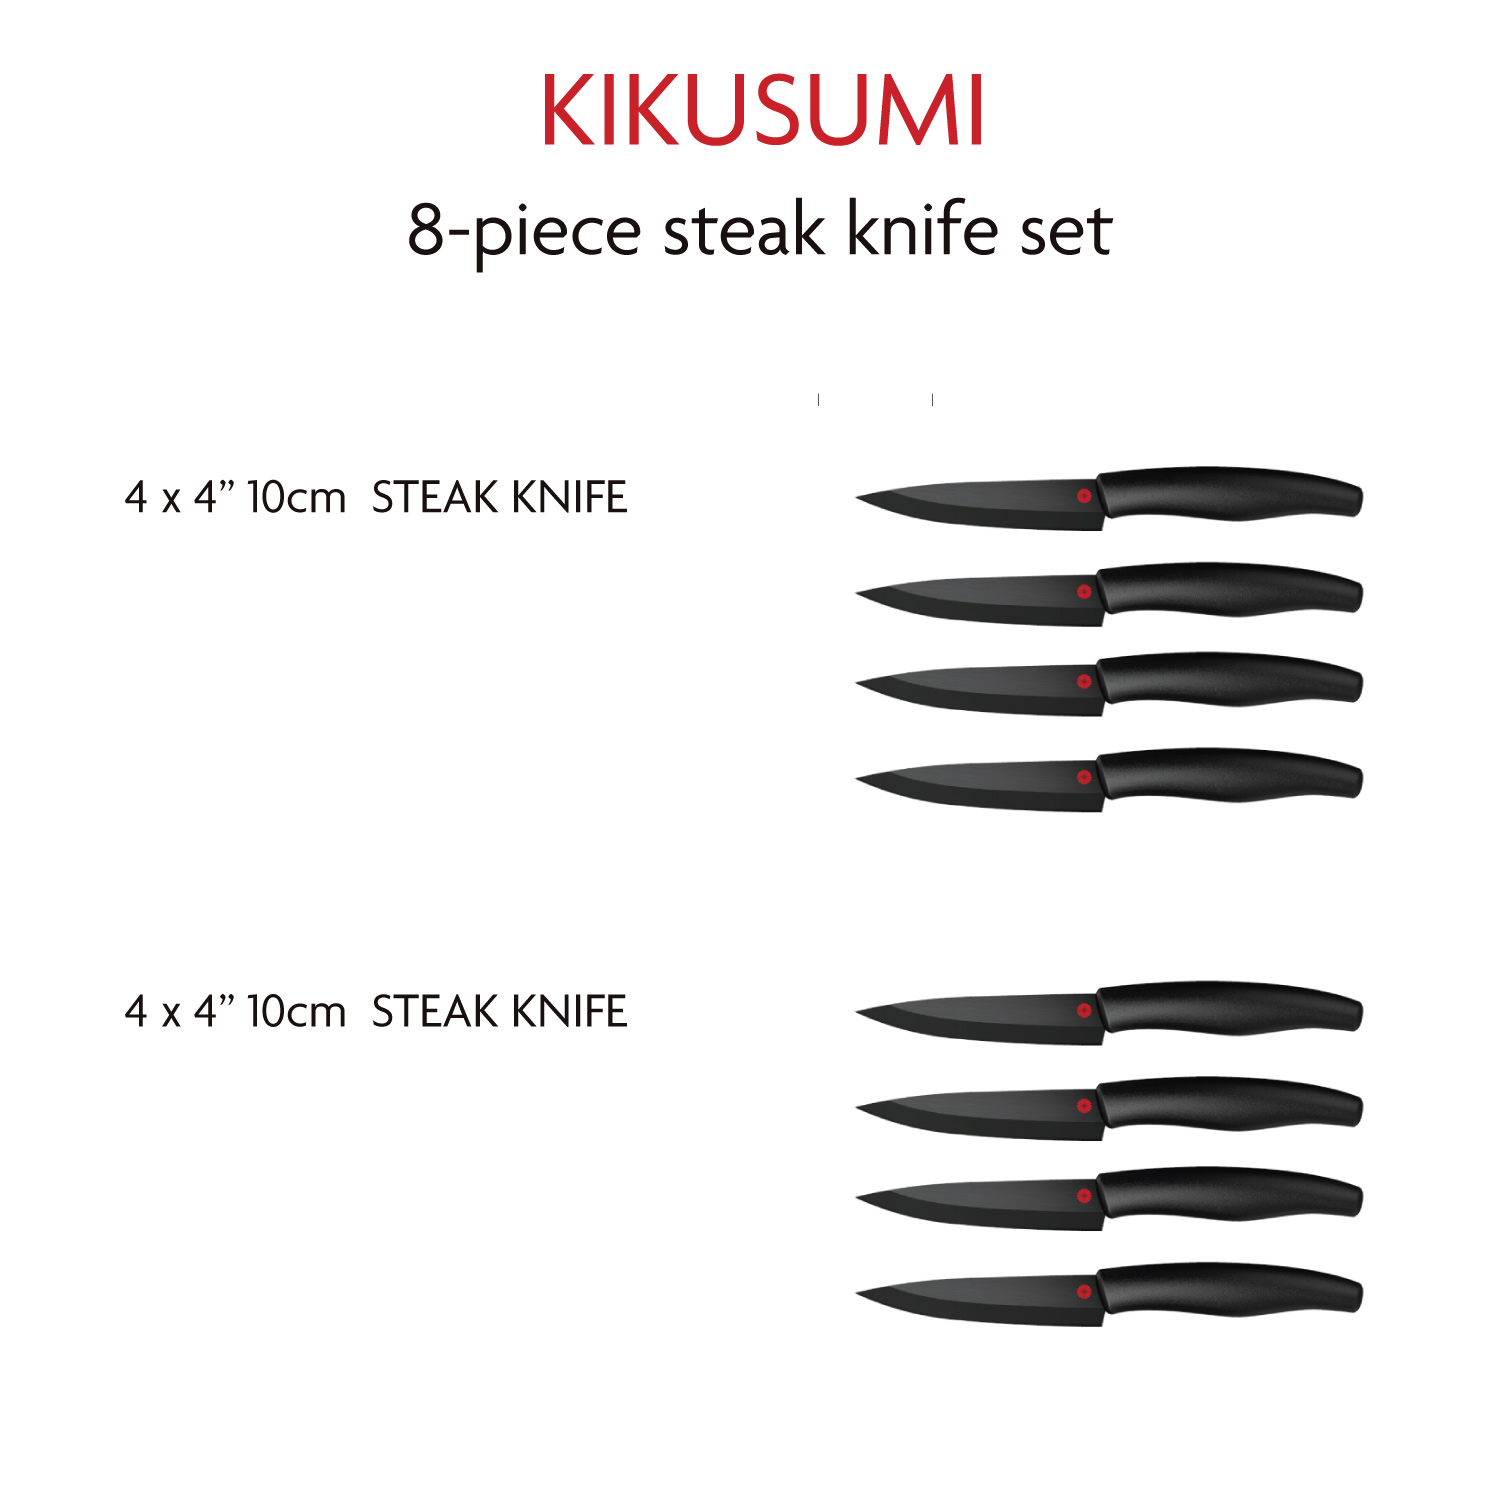 https://kikusumiknife.com/wp-content/uploads/2021/03/8SKS-SB-Steak-Details.jpg